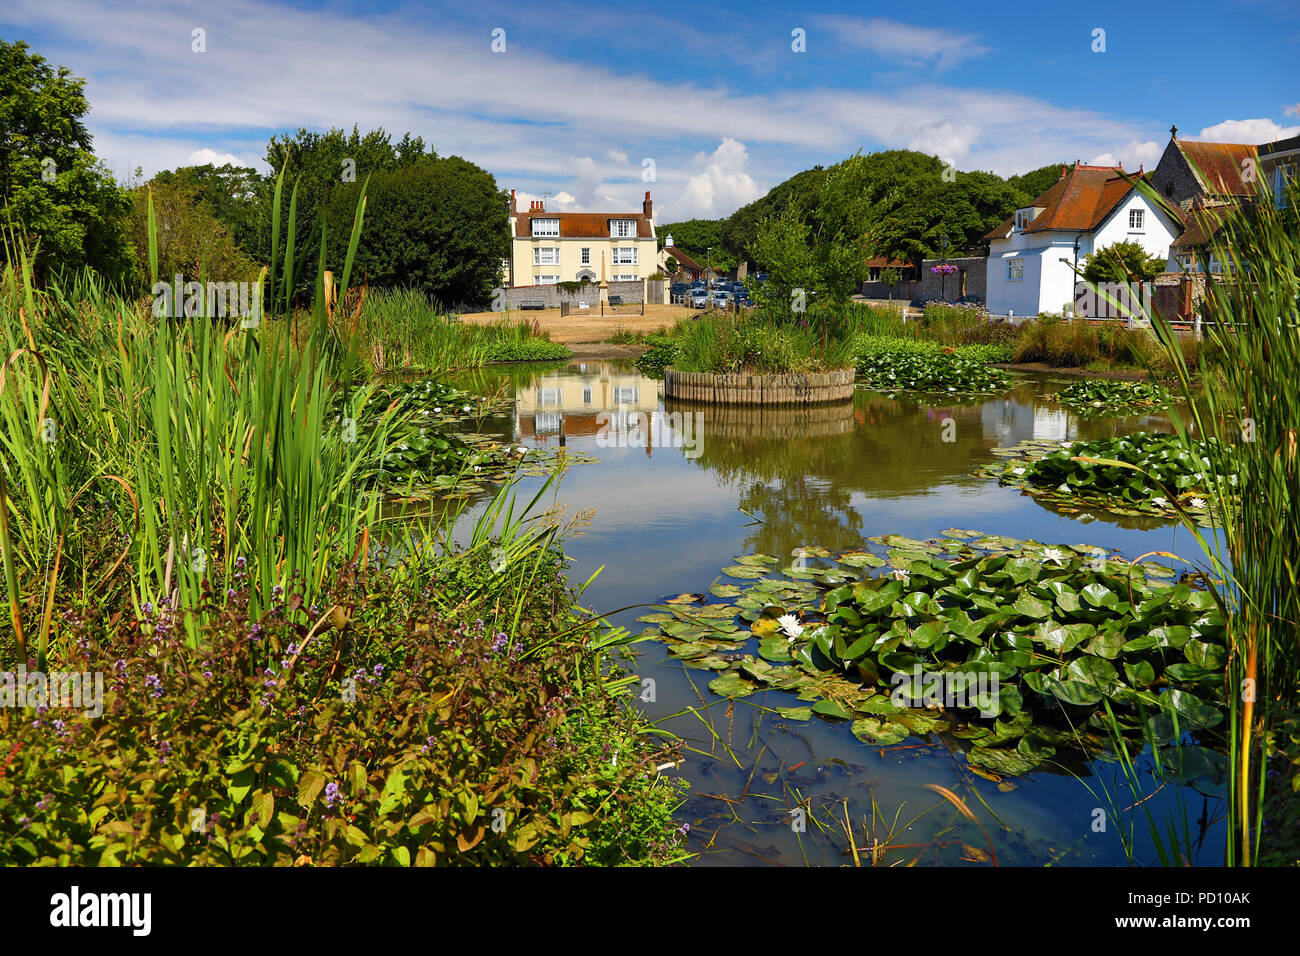 La aldea de estanque y los olmos, donde Rudyard Kipling vivió, en la aldea  de Rottingdean, East Sussex, Inglaterra, Reino Unido Fotografía de stock -  Alamy